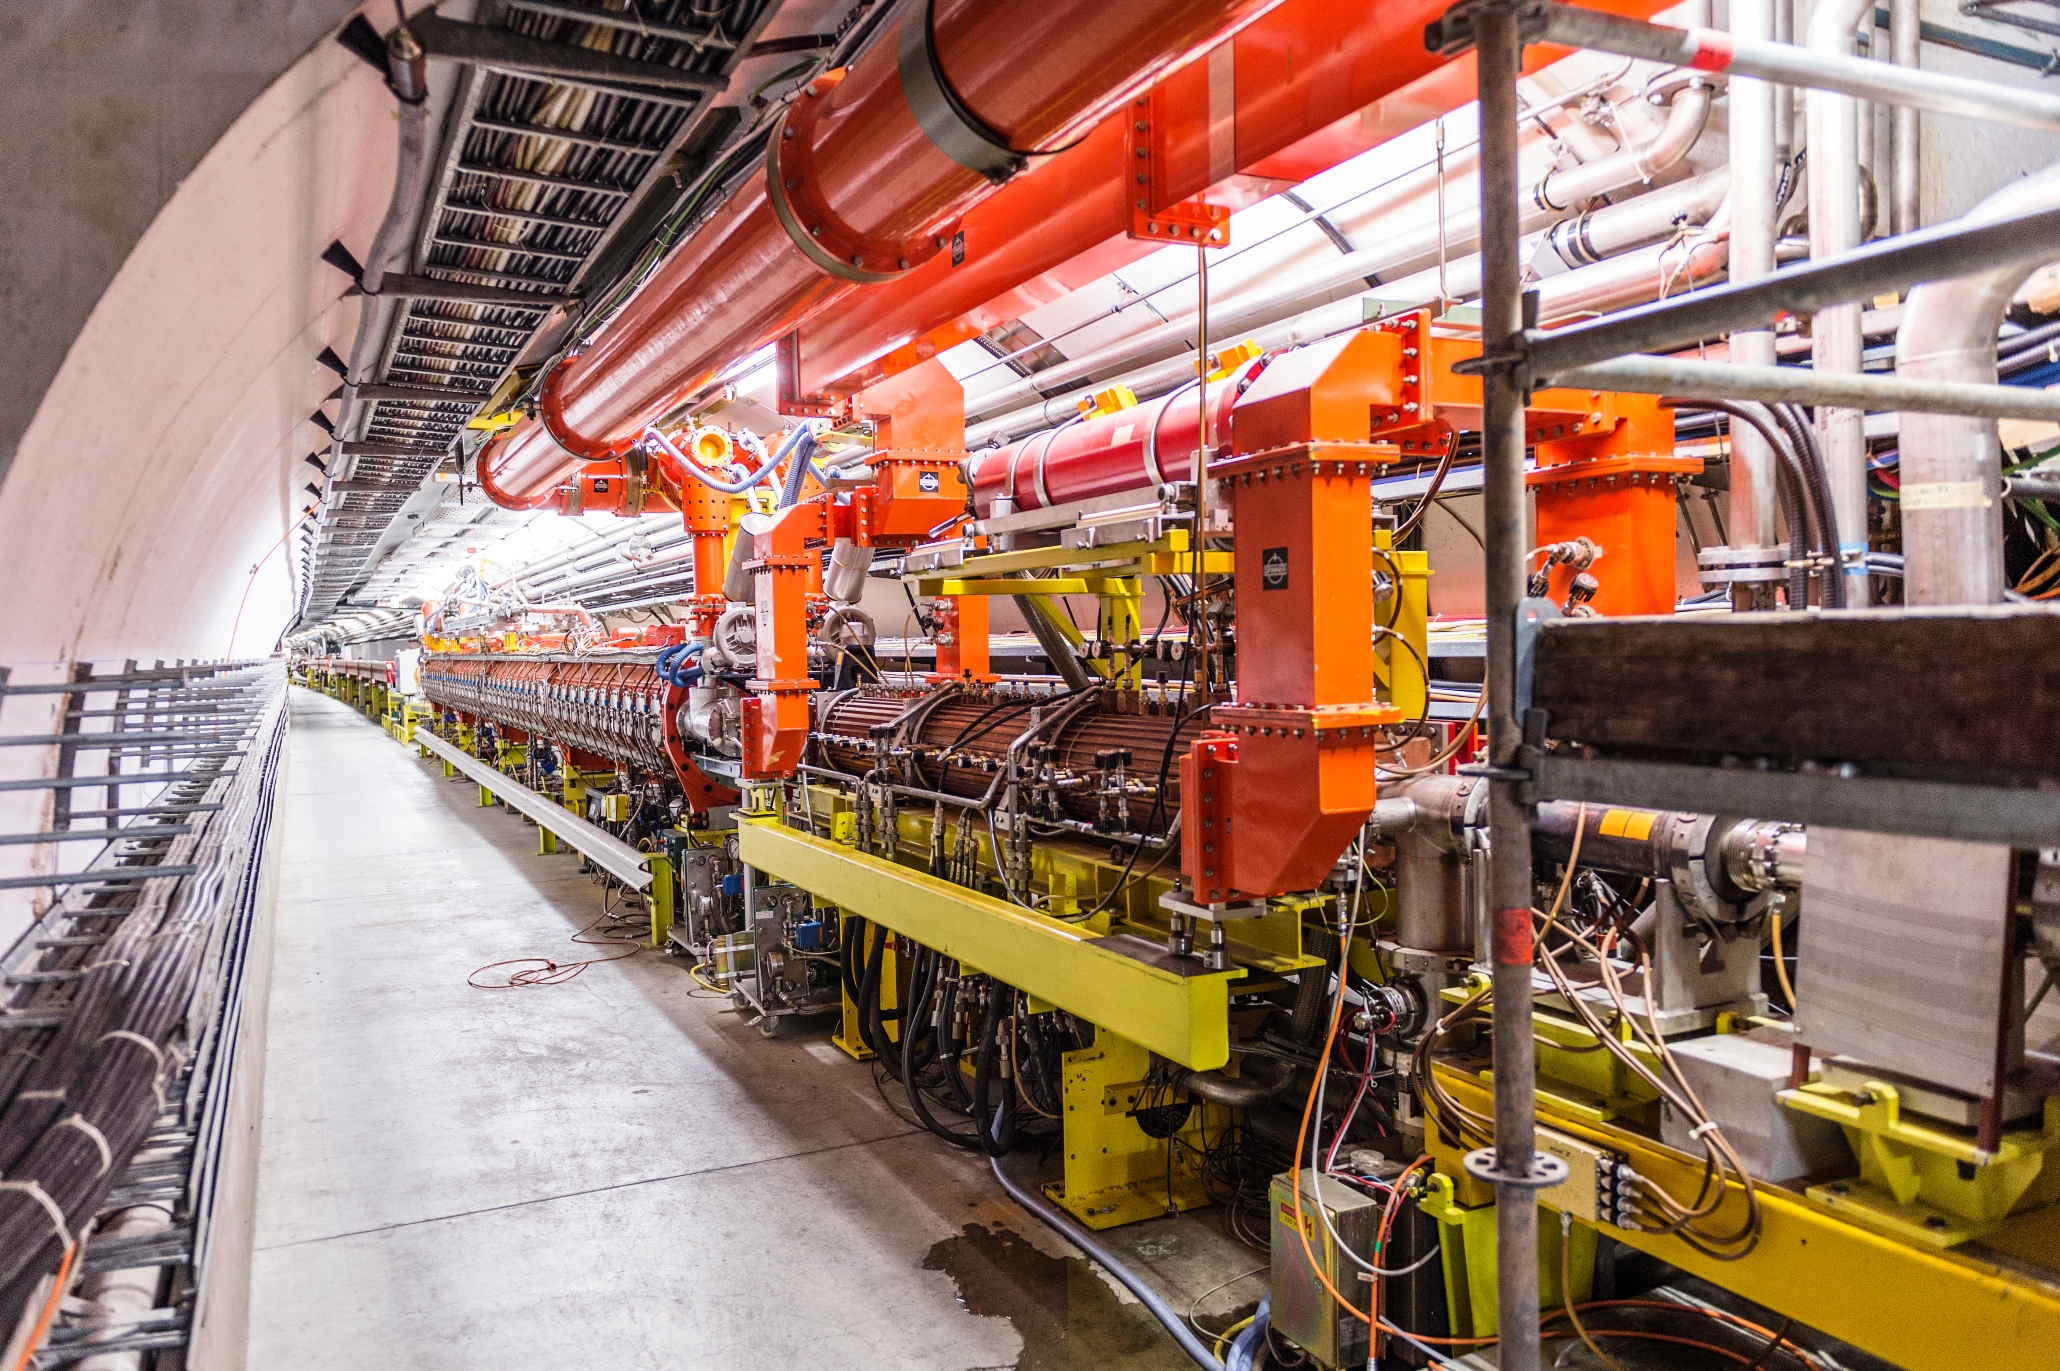 Une vue du Supersynchrotron à protons du Cern en 2013. C'est actuellement le second accélérateur de particules en taille après le LHC dans le monde. © Piotr Traczyk